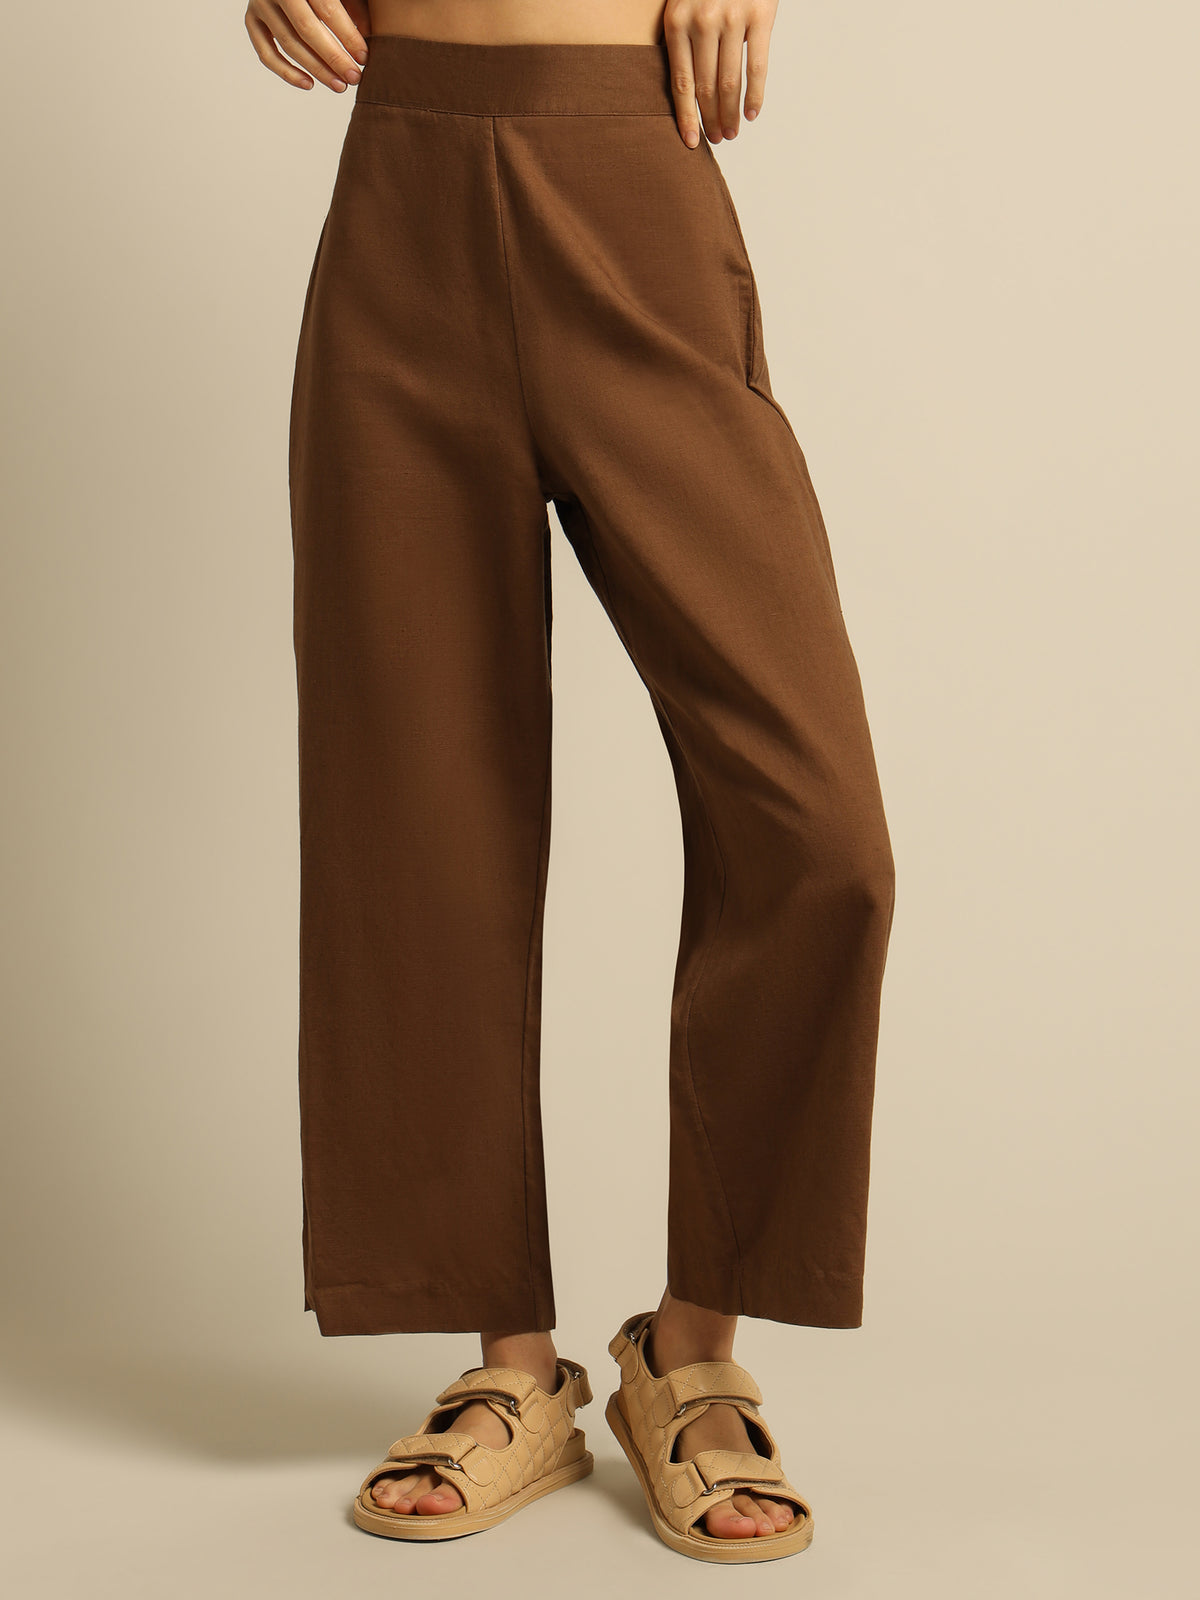 Selma Wide Leg Pants in Chocolate Brown